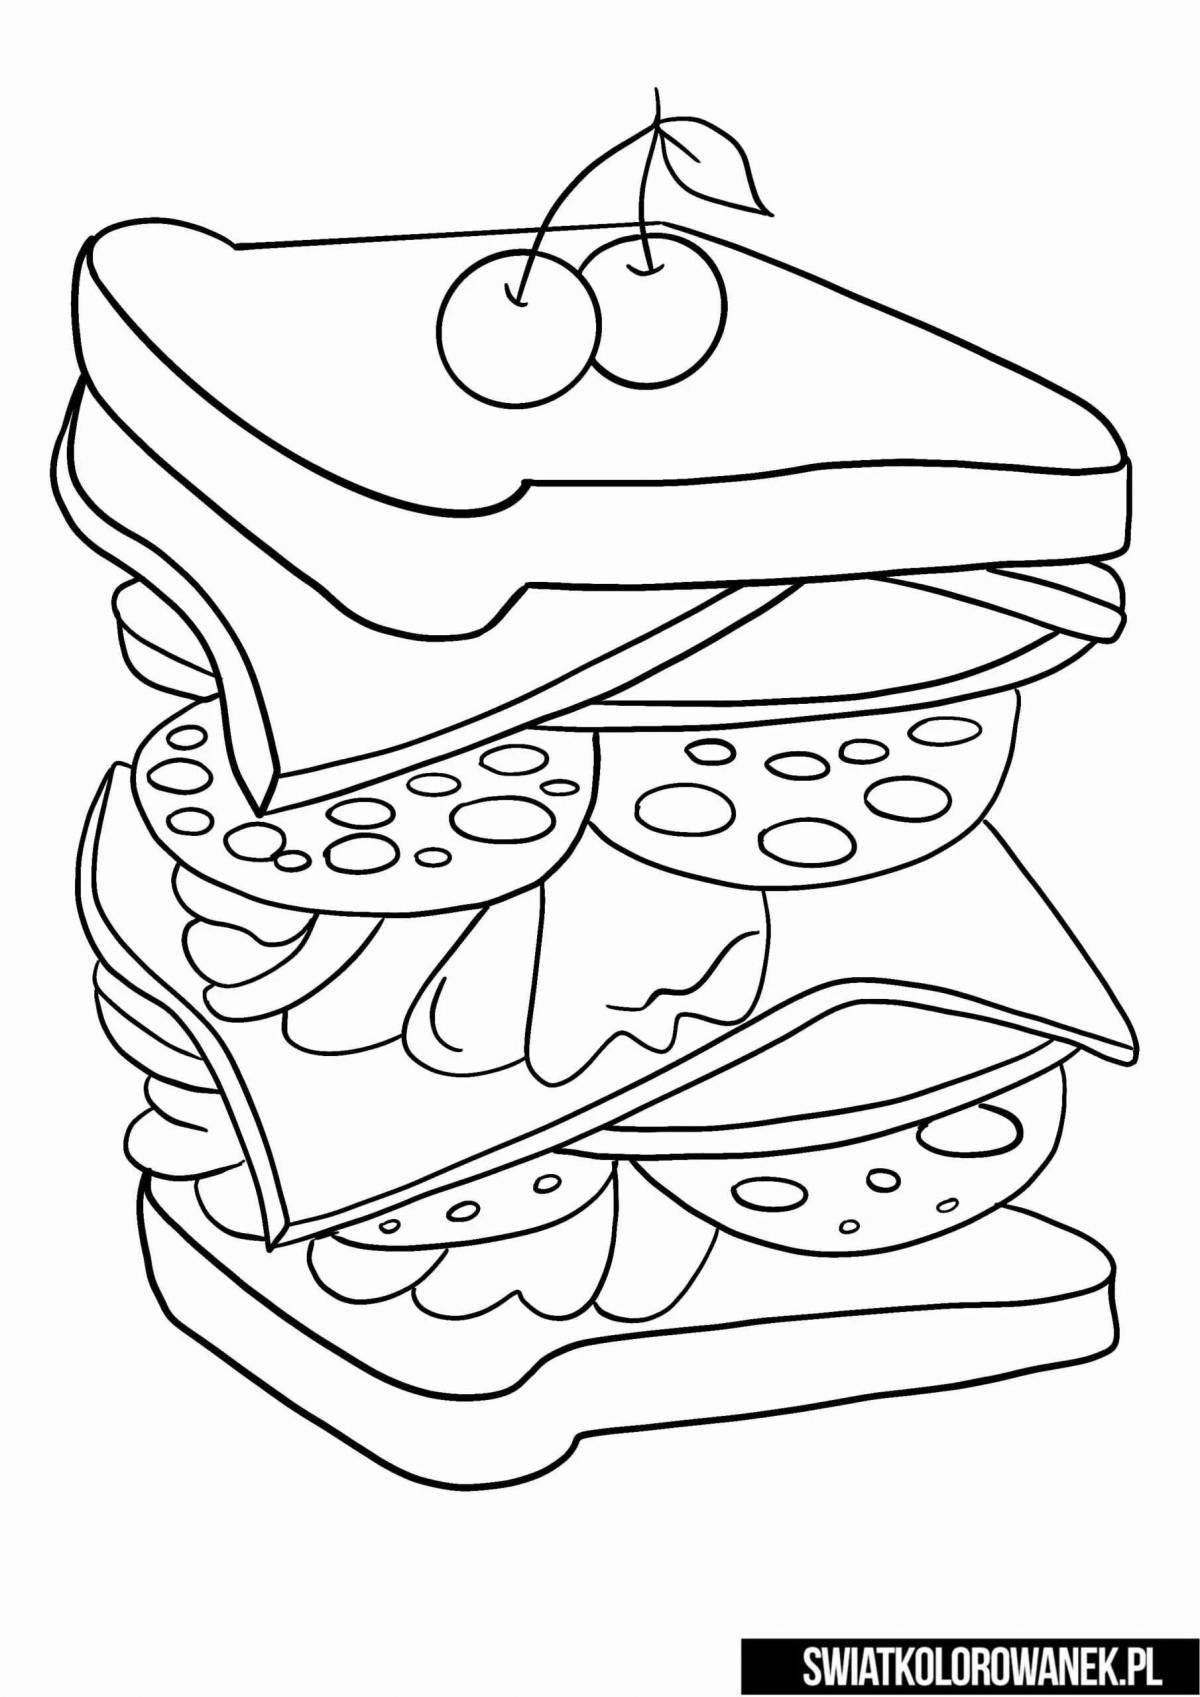 Интересная раскраска сэндвичей для детей